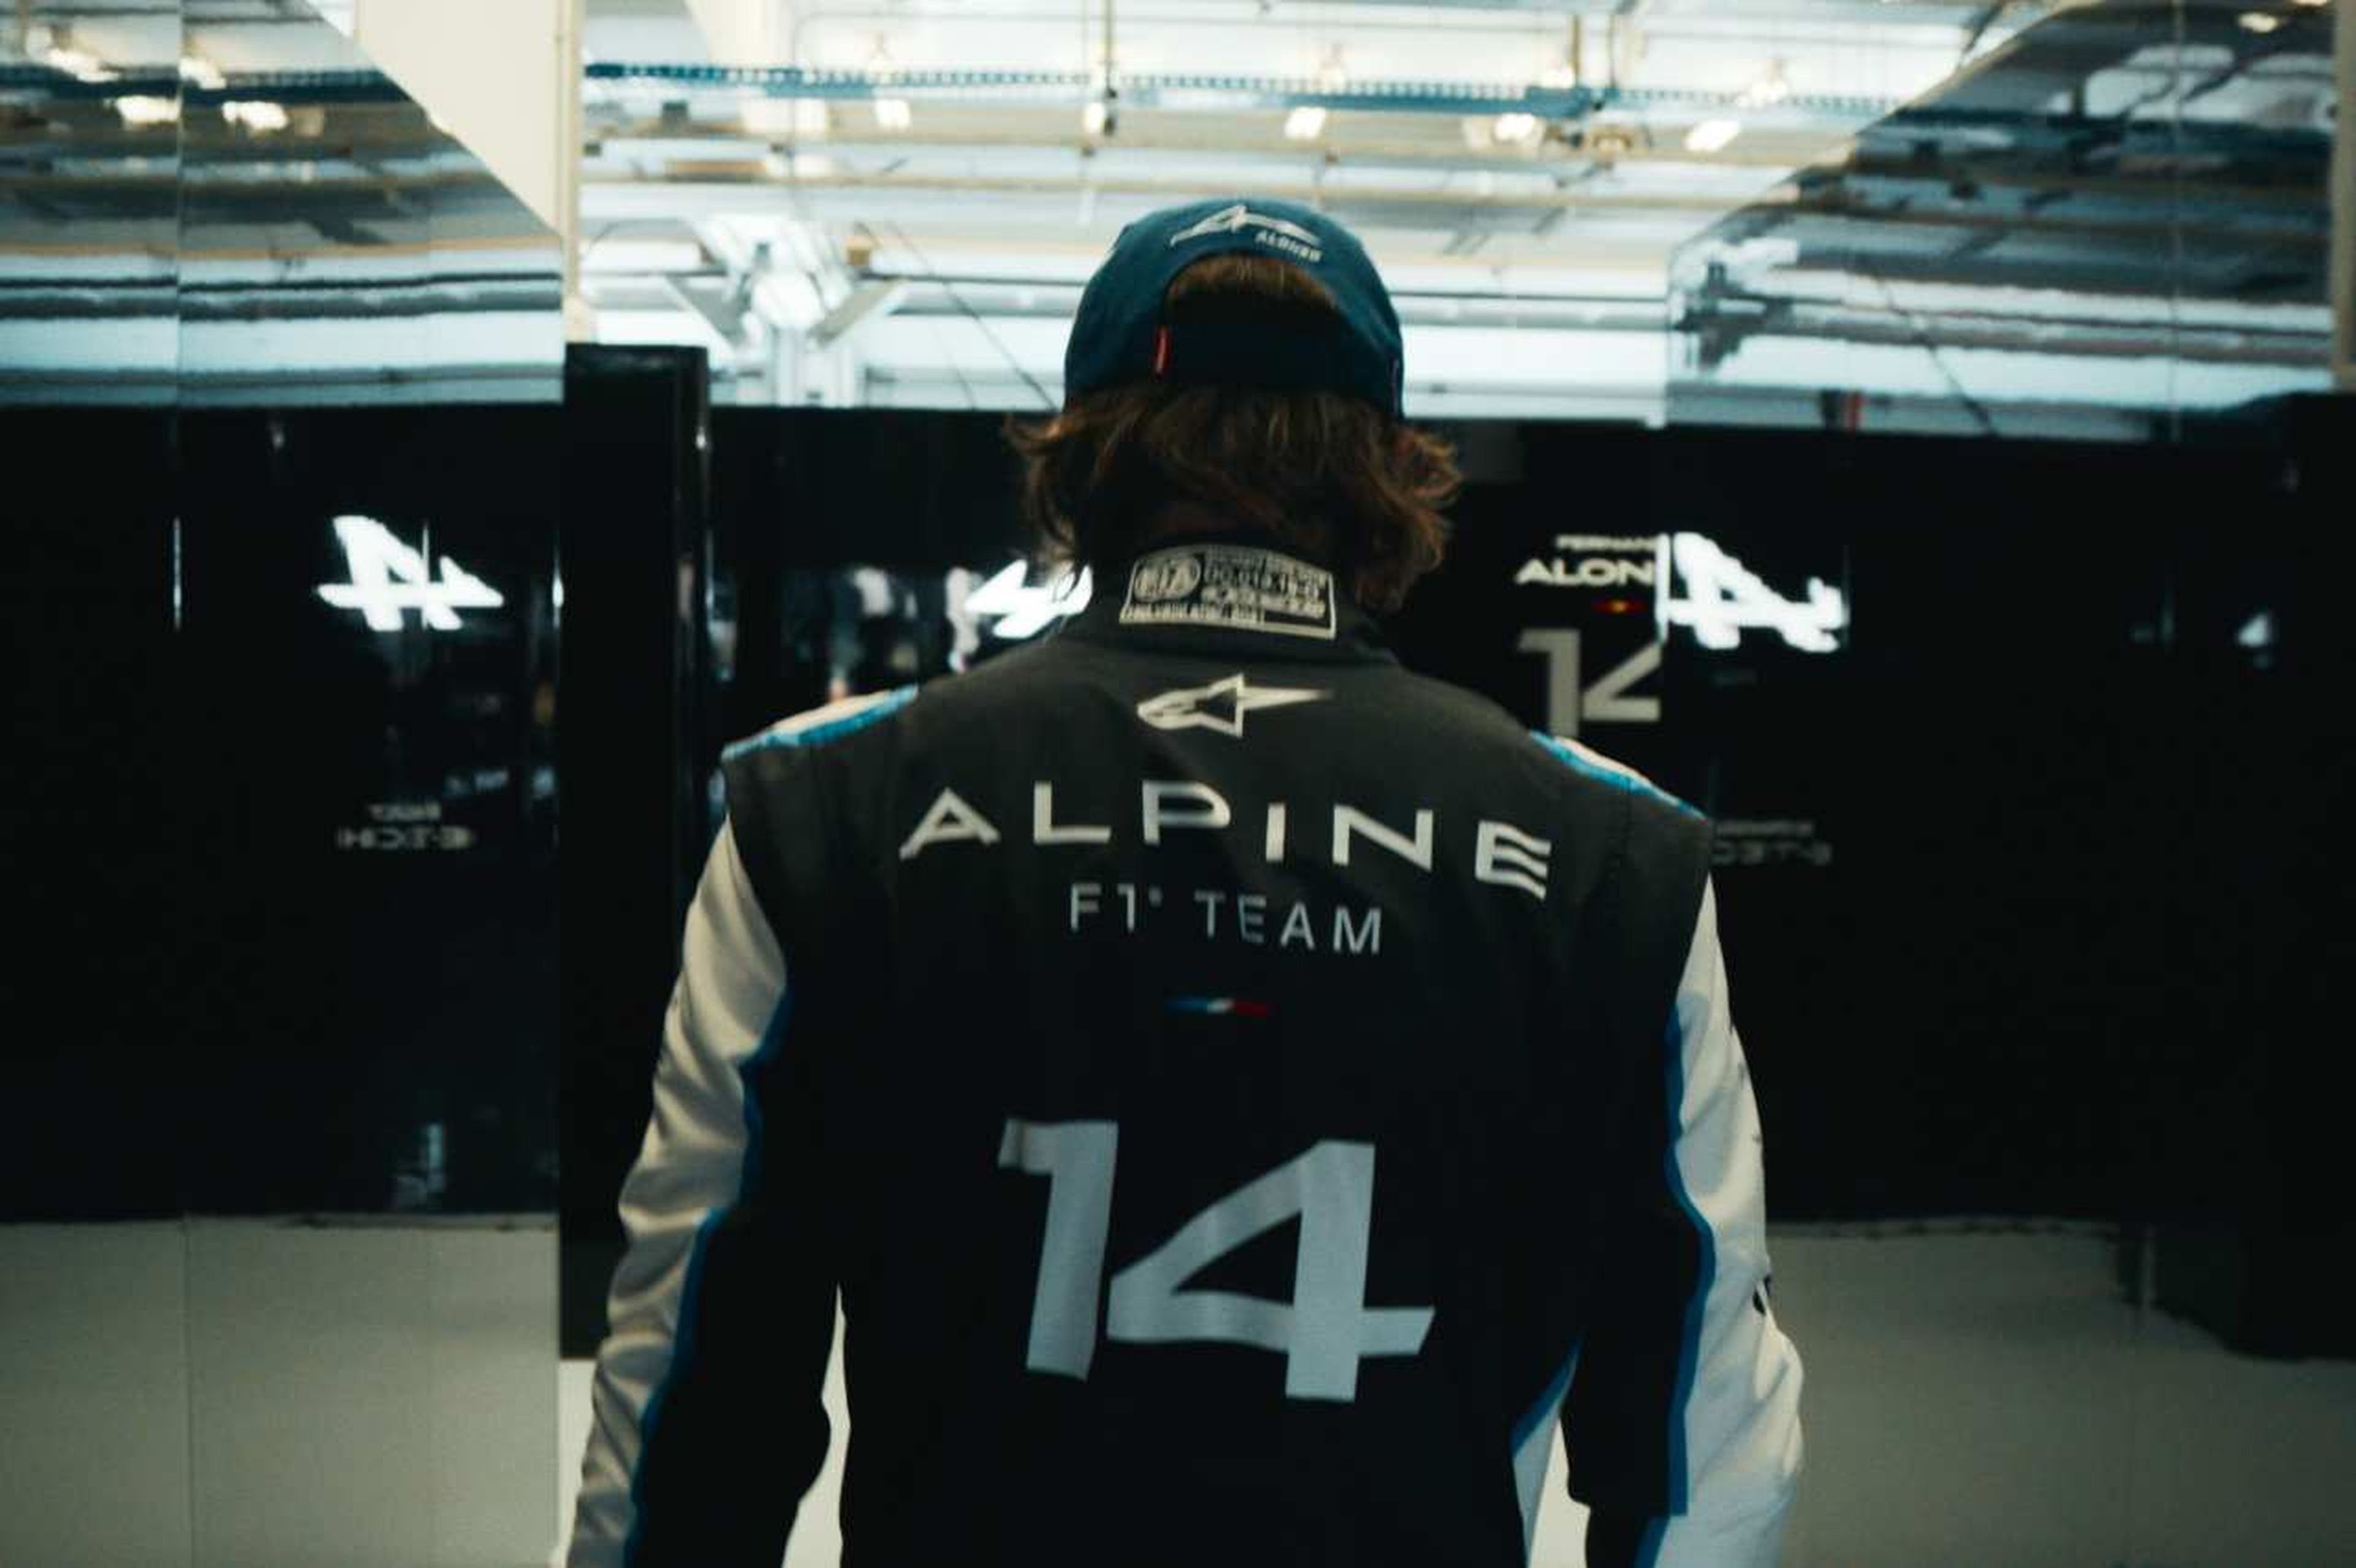 Fernando Alonso, en el box del equipo Alpine